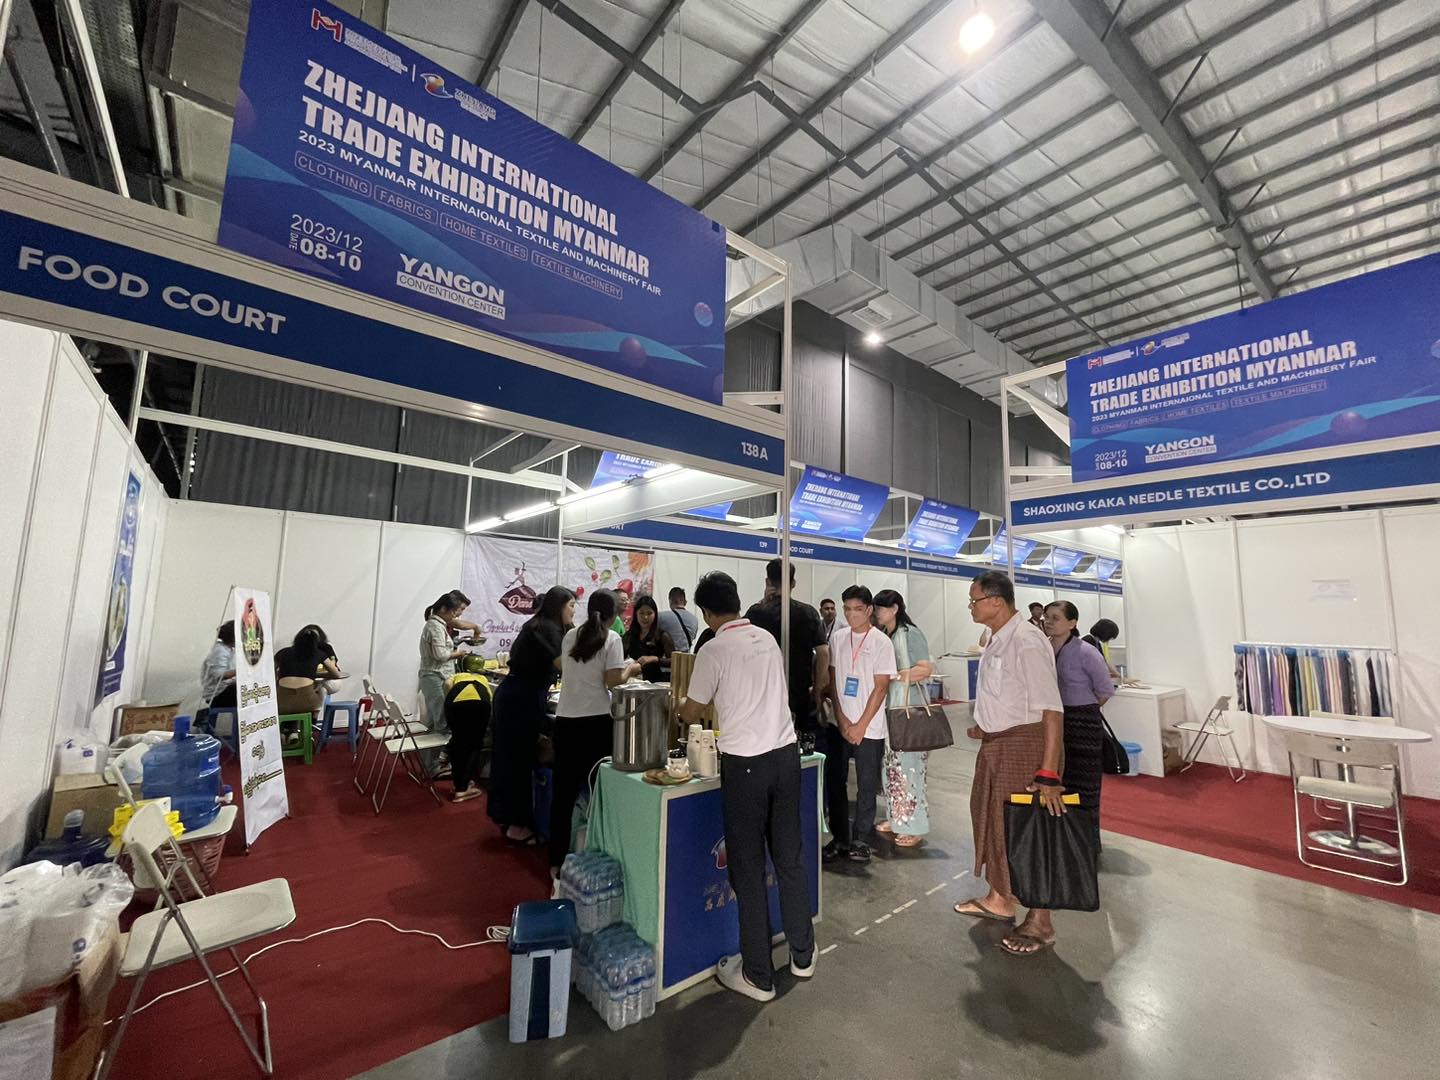 တရုတ်-မြန်မာ နှစ်နိုင်ငံ အထည်အလိပ်နှင့် အထည်ချုပ်လုပ်ငန်းများ ဖွံ့ဖြိုးတိုးတက်ရေးအတွက် ကုန်စည်ပြပွဲကျင်းပ